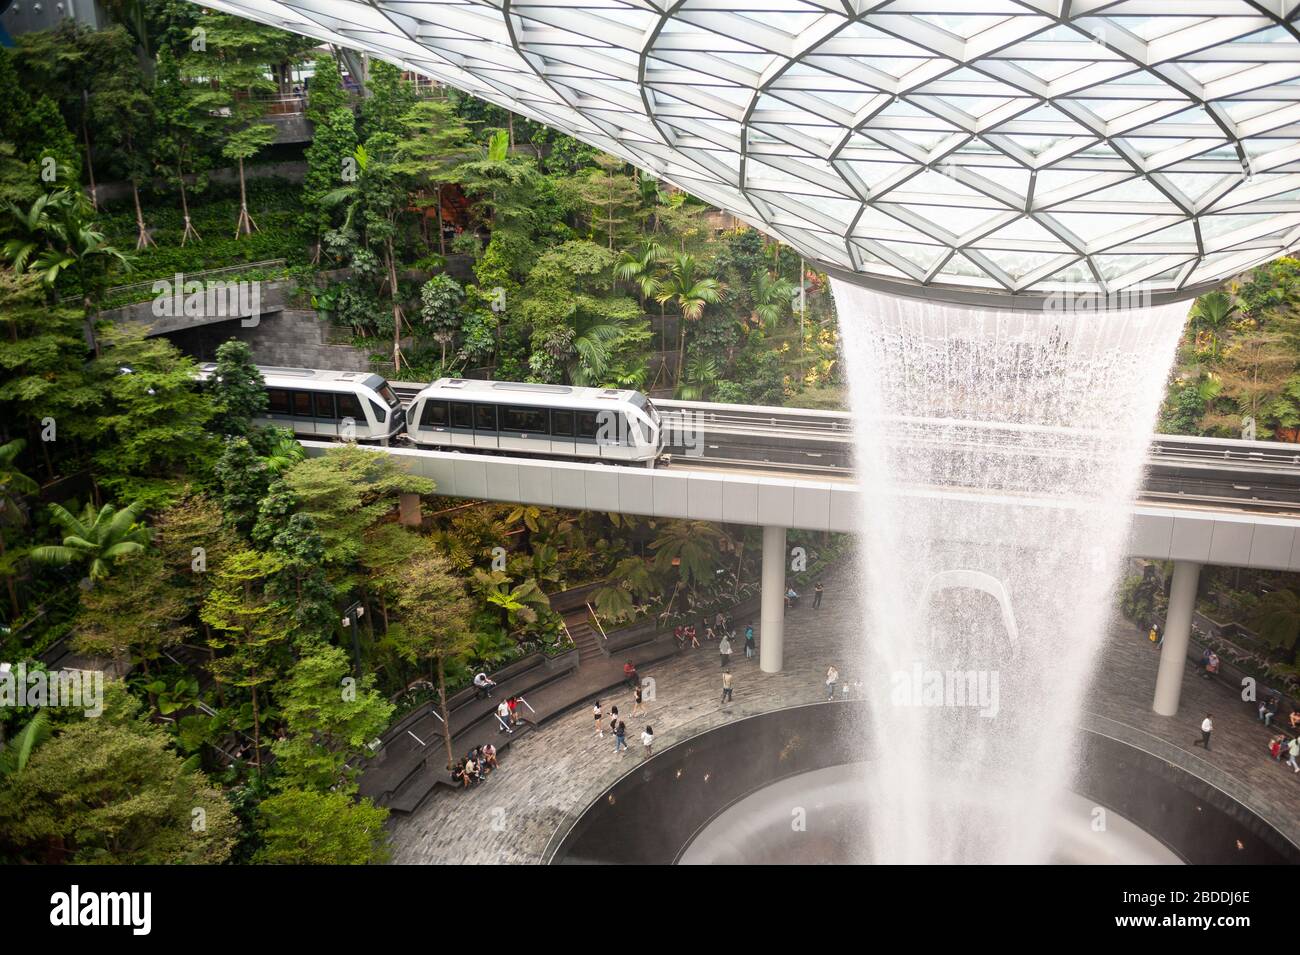 18.03.2020, Singapour, , Singapour - Forest Valley avec cascade de Vortex de pluie HSBC dans le nouveau terminal Jewel de l'aéroport international de Changi. Le desi Banque D'Images